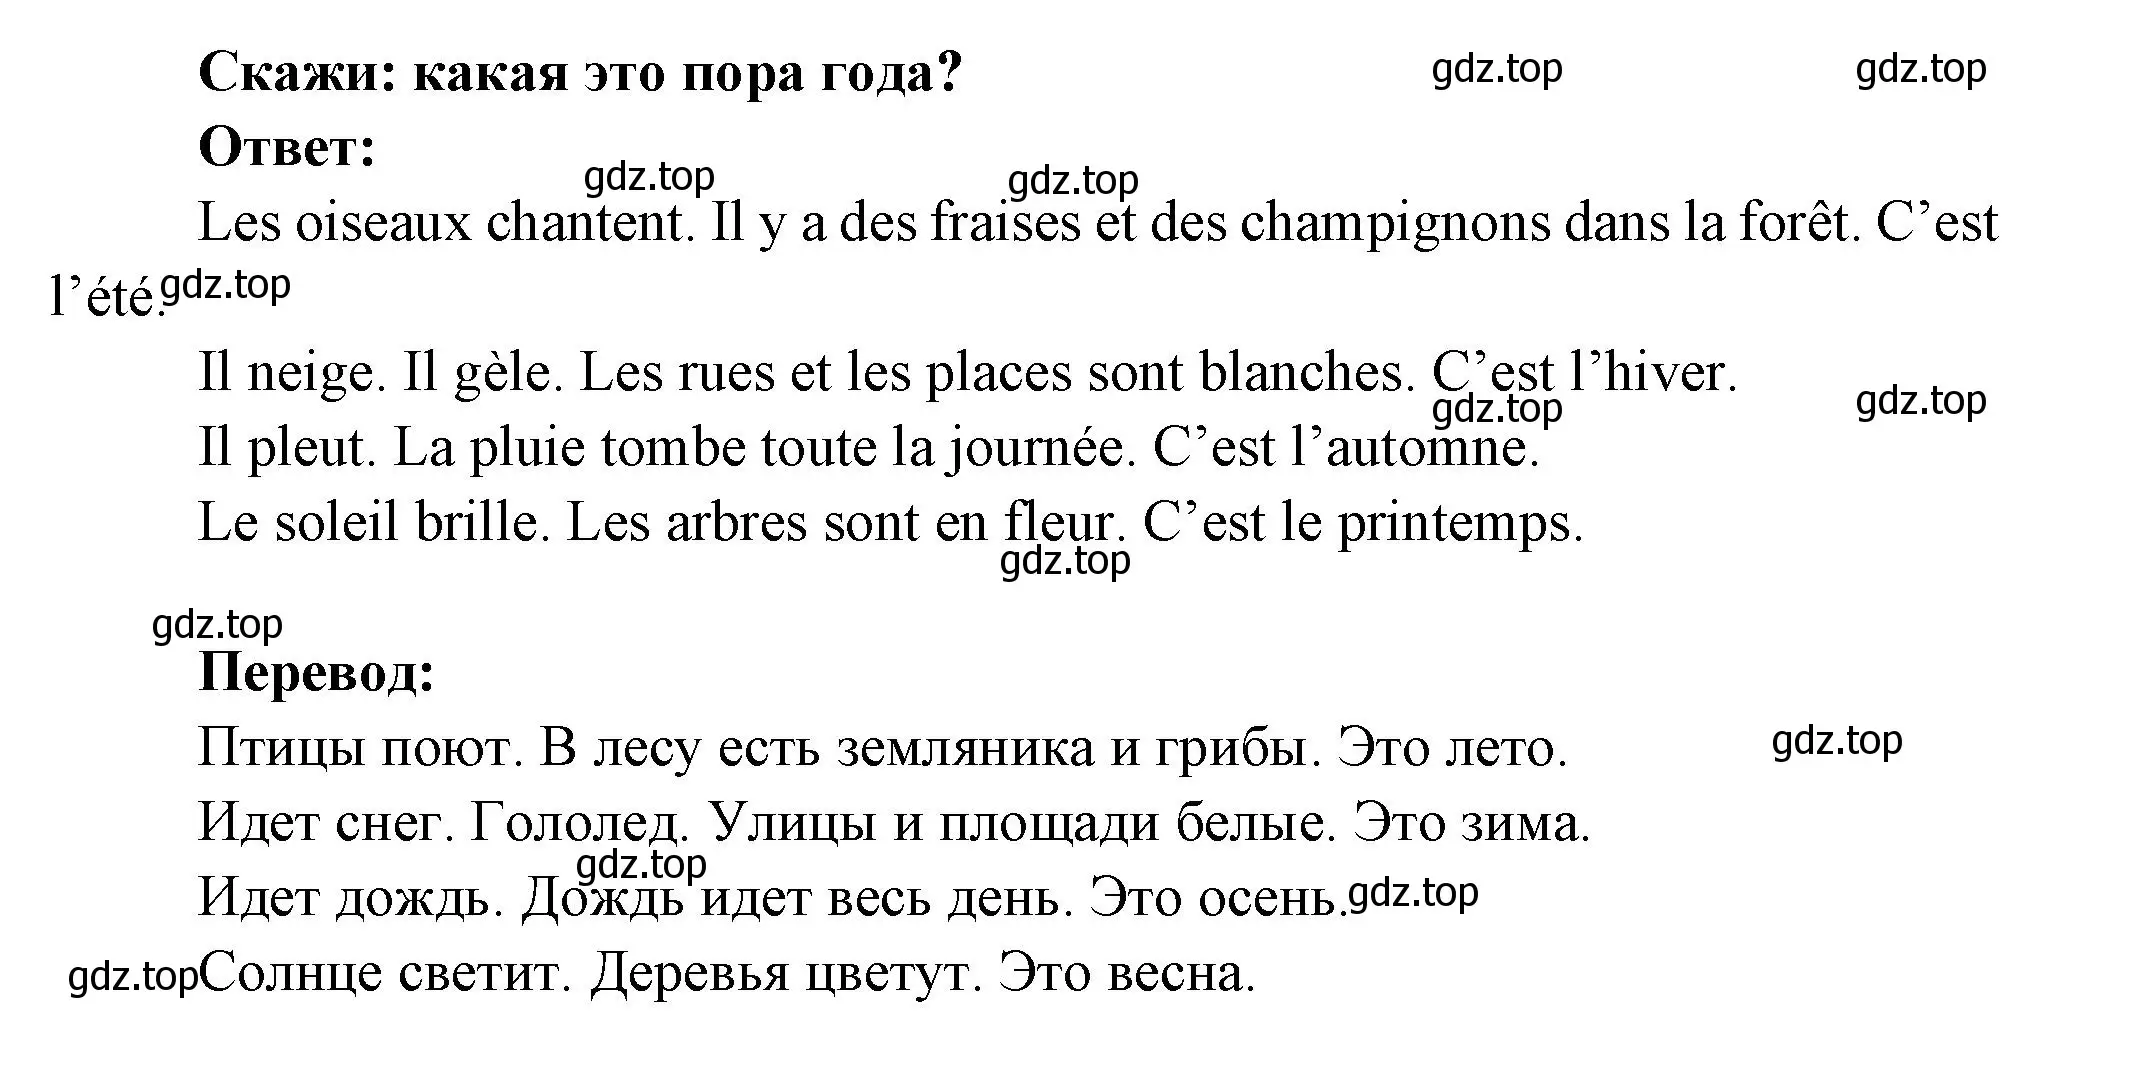 Решение номер 10 (страница 73) гдз по французскому языку 5 класс Береговская, Белосельская, учебник 2 часть